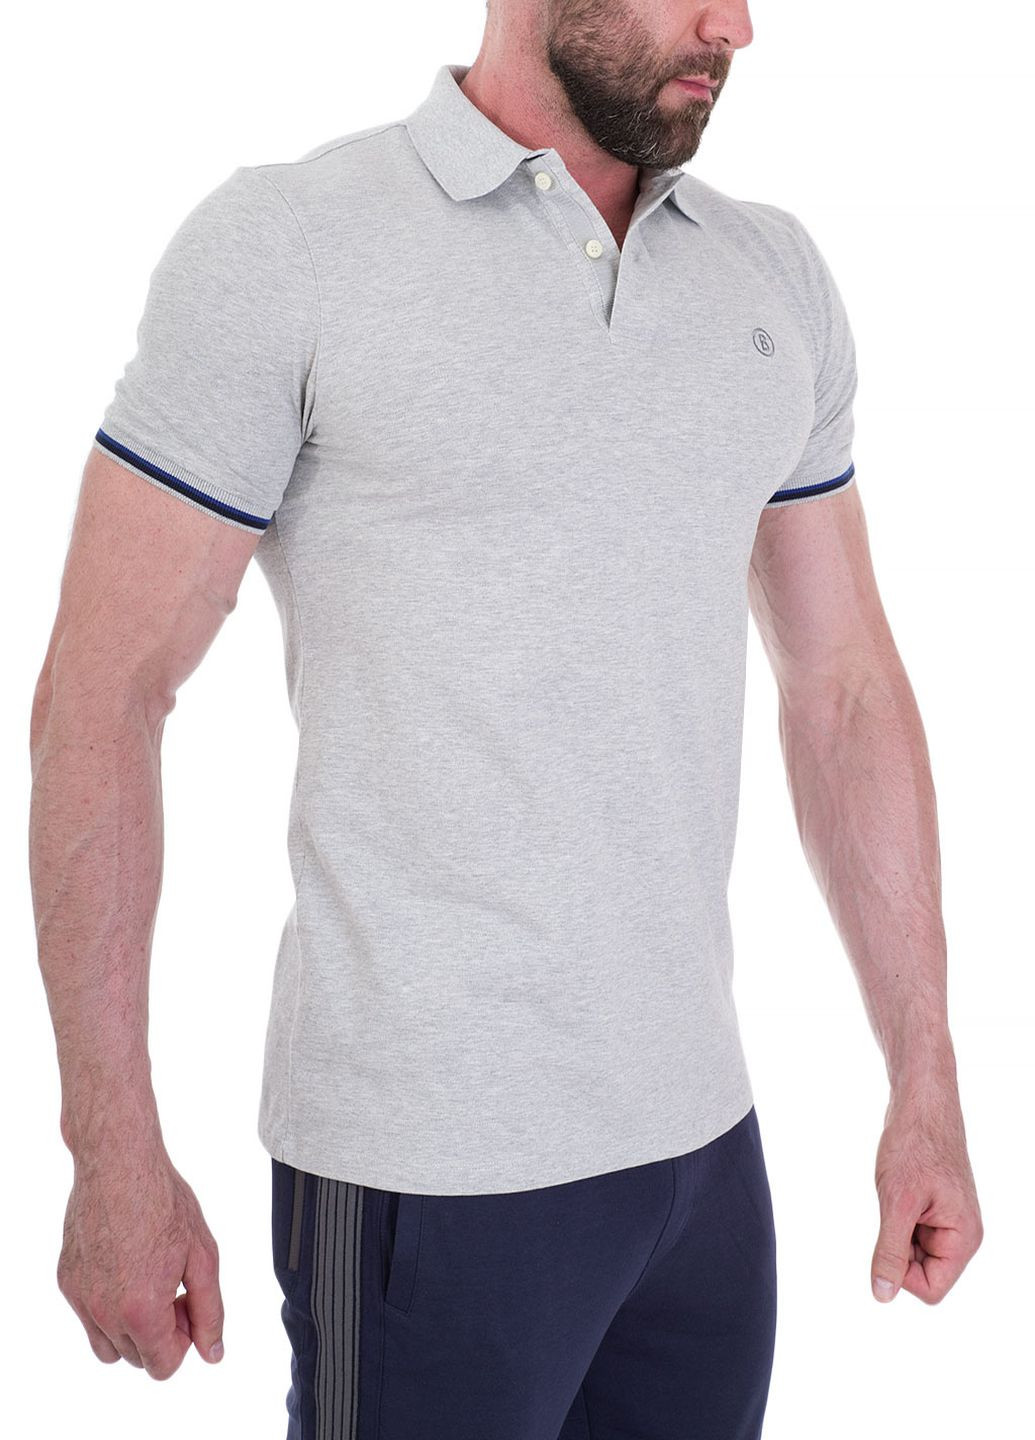 Серая футболка-поло чоловіче для мужчин Bogner однотонная